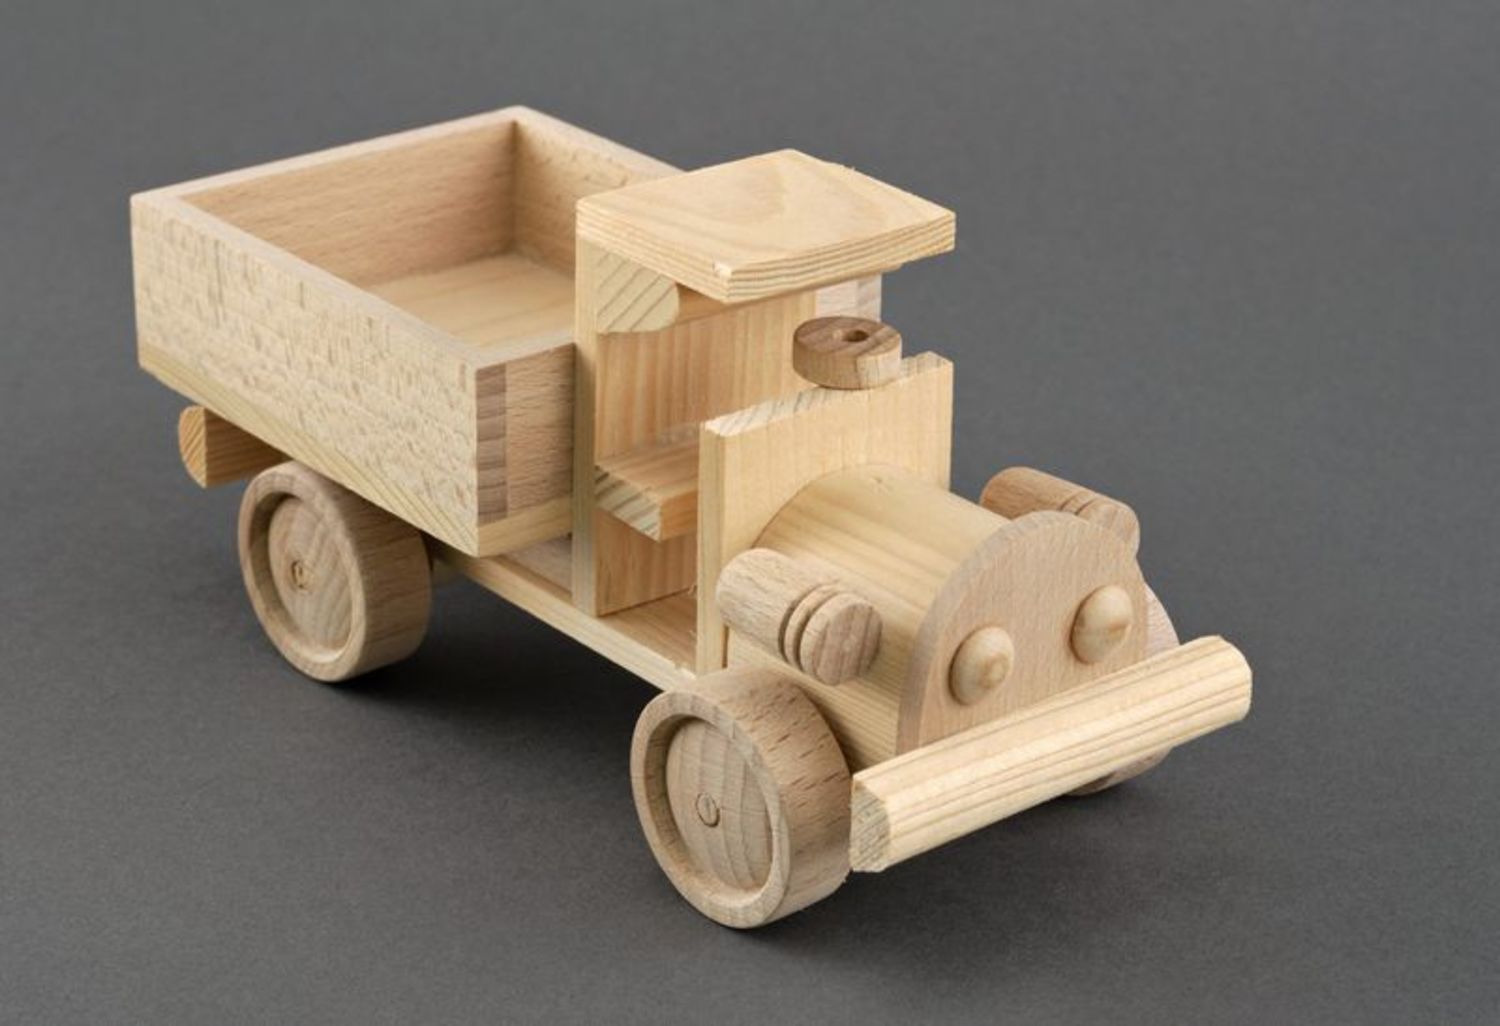 caminhão de madeira de brinquedo anos 60 - Pesquisa Google  Joyeros de  madera, Coches de juguete de madera, Camiones de juguete de madera